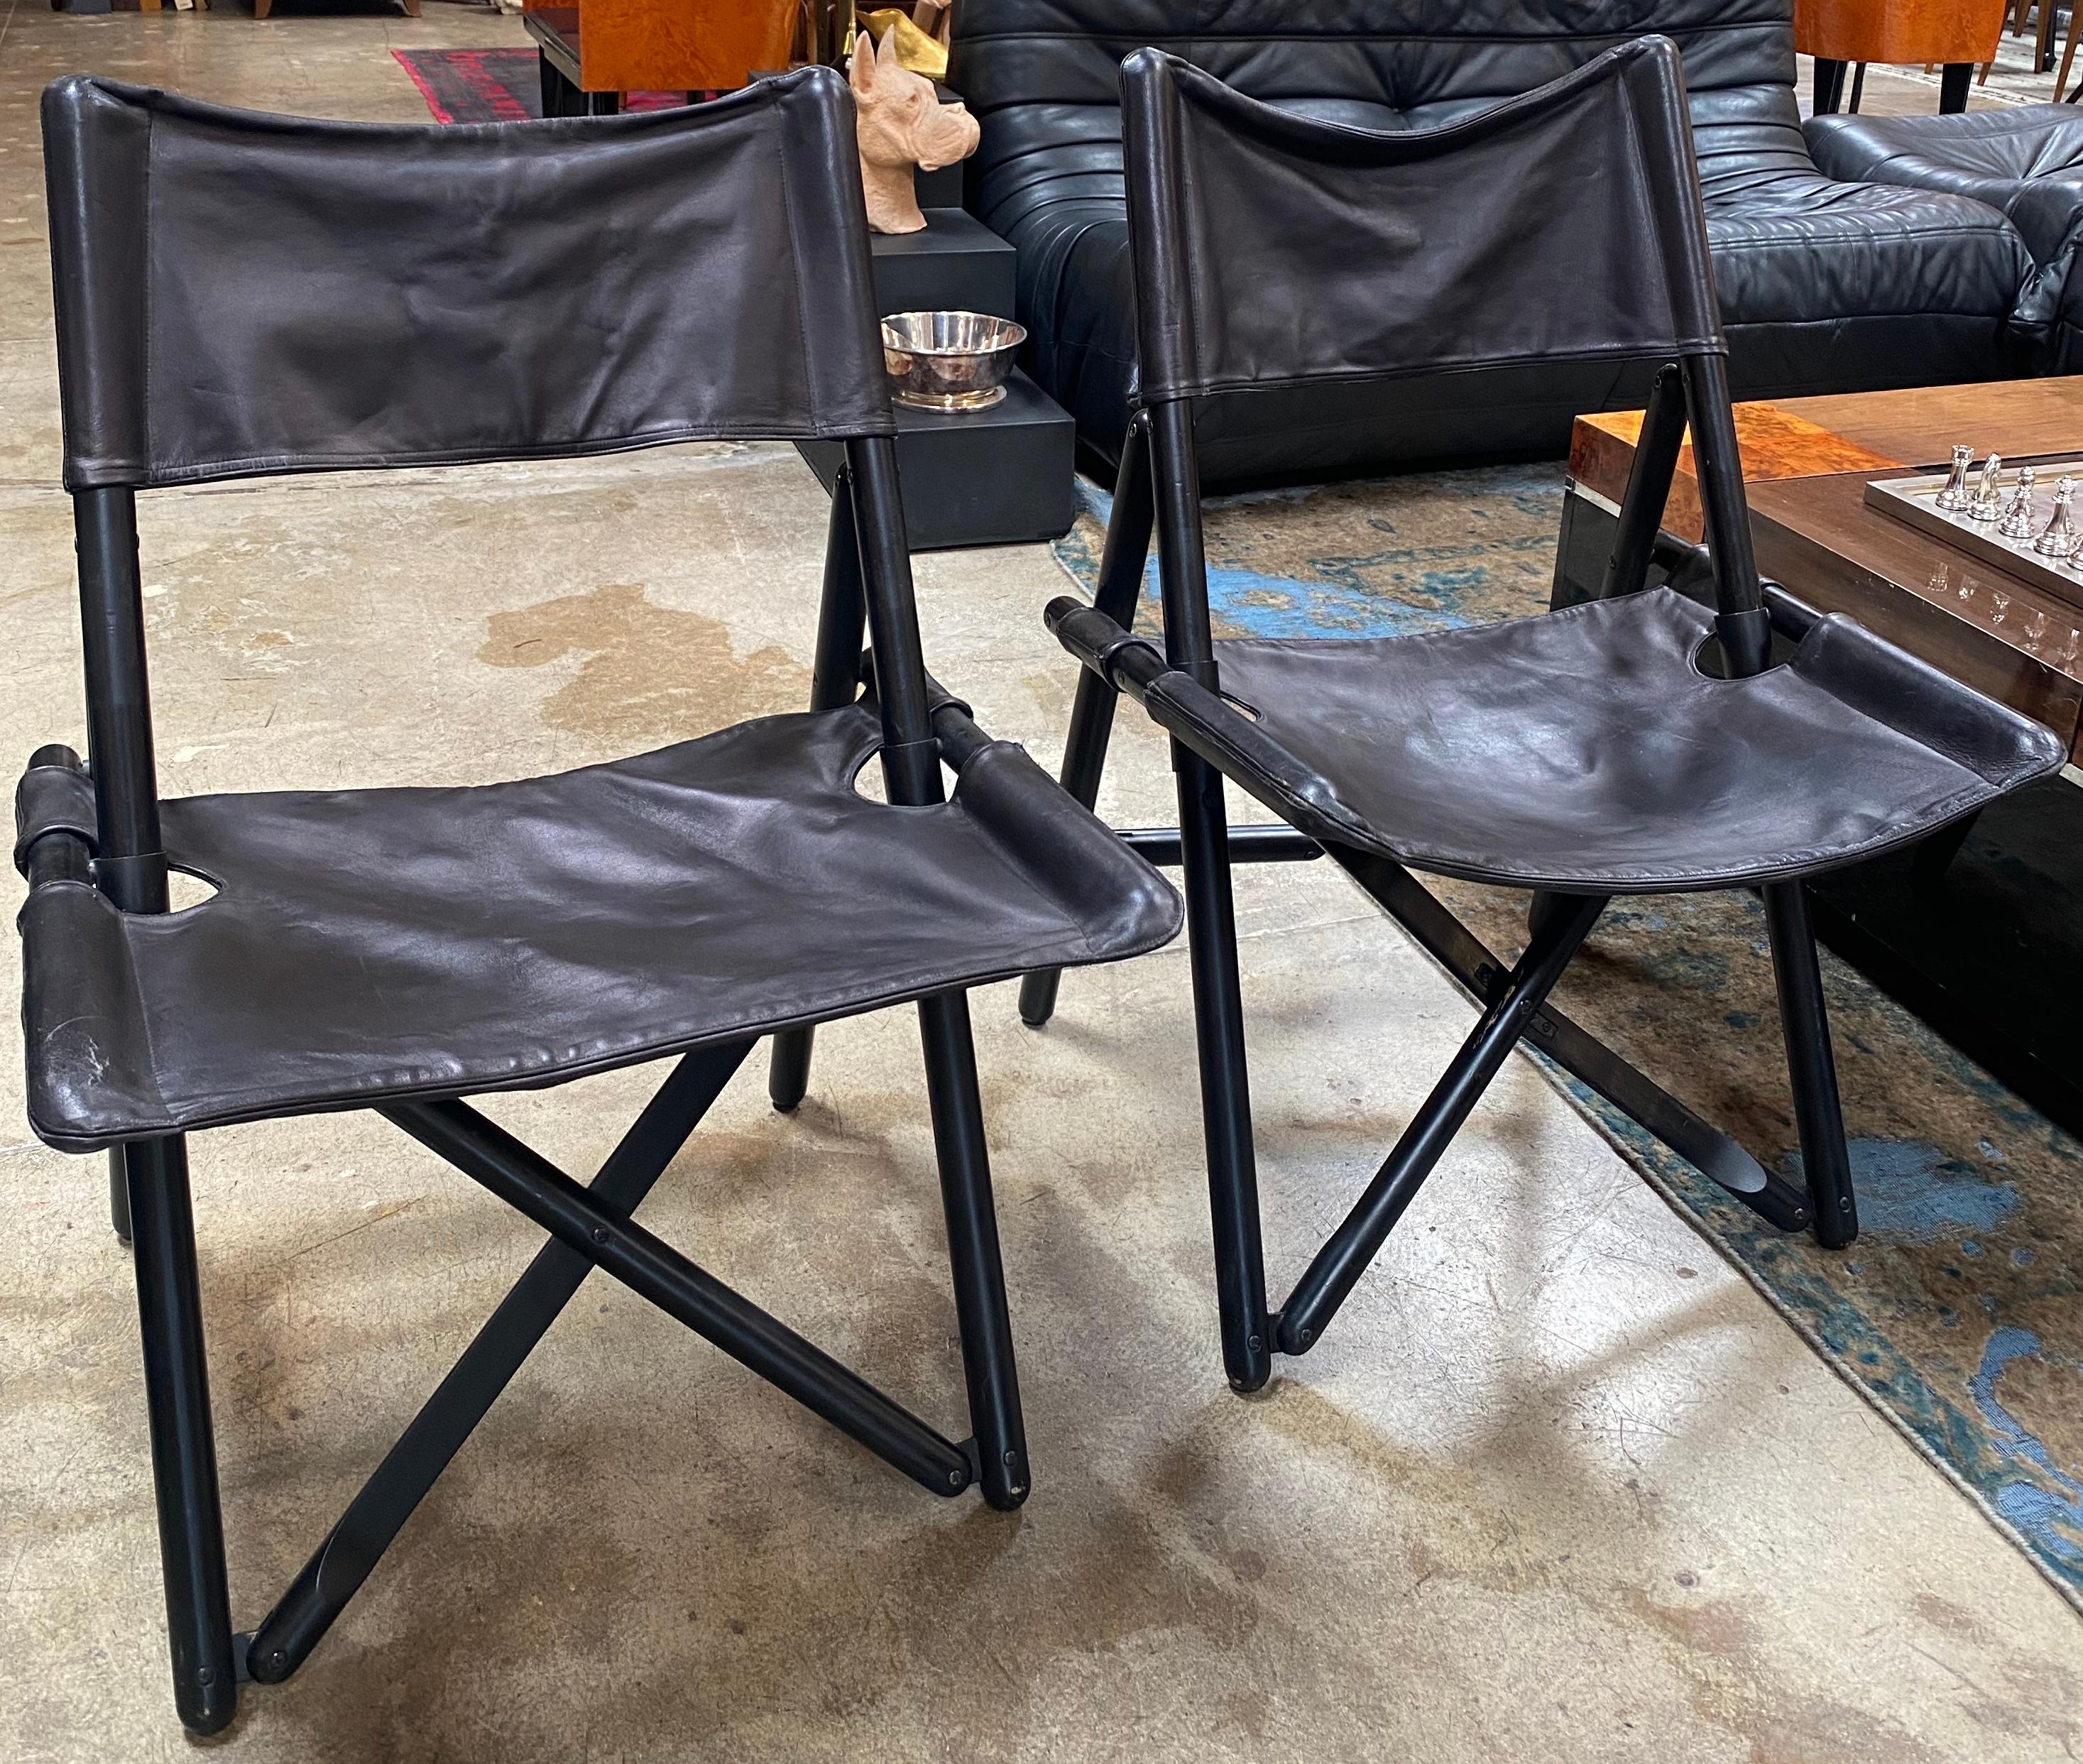 Schönes Paar 2 italienische Beistellstühle aus der Mitte des Jahrhunderts aus Holz und Leder. Die Stühle wurden in Italien hergestellt 1960er Jahre ca.
Der Zustand der Stühle ist Vintage und weist kleinere Schäden auf. Diese Stühle mit ihren